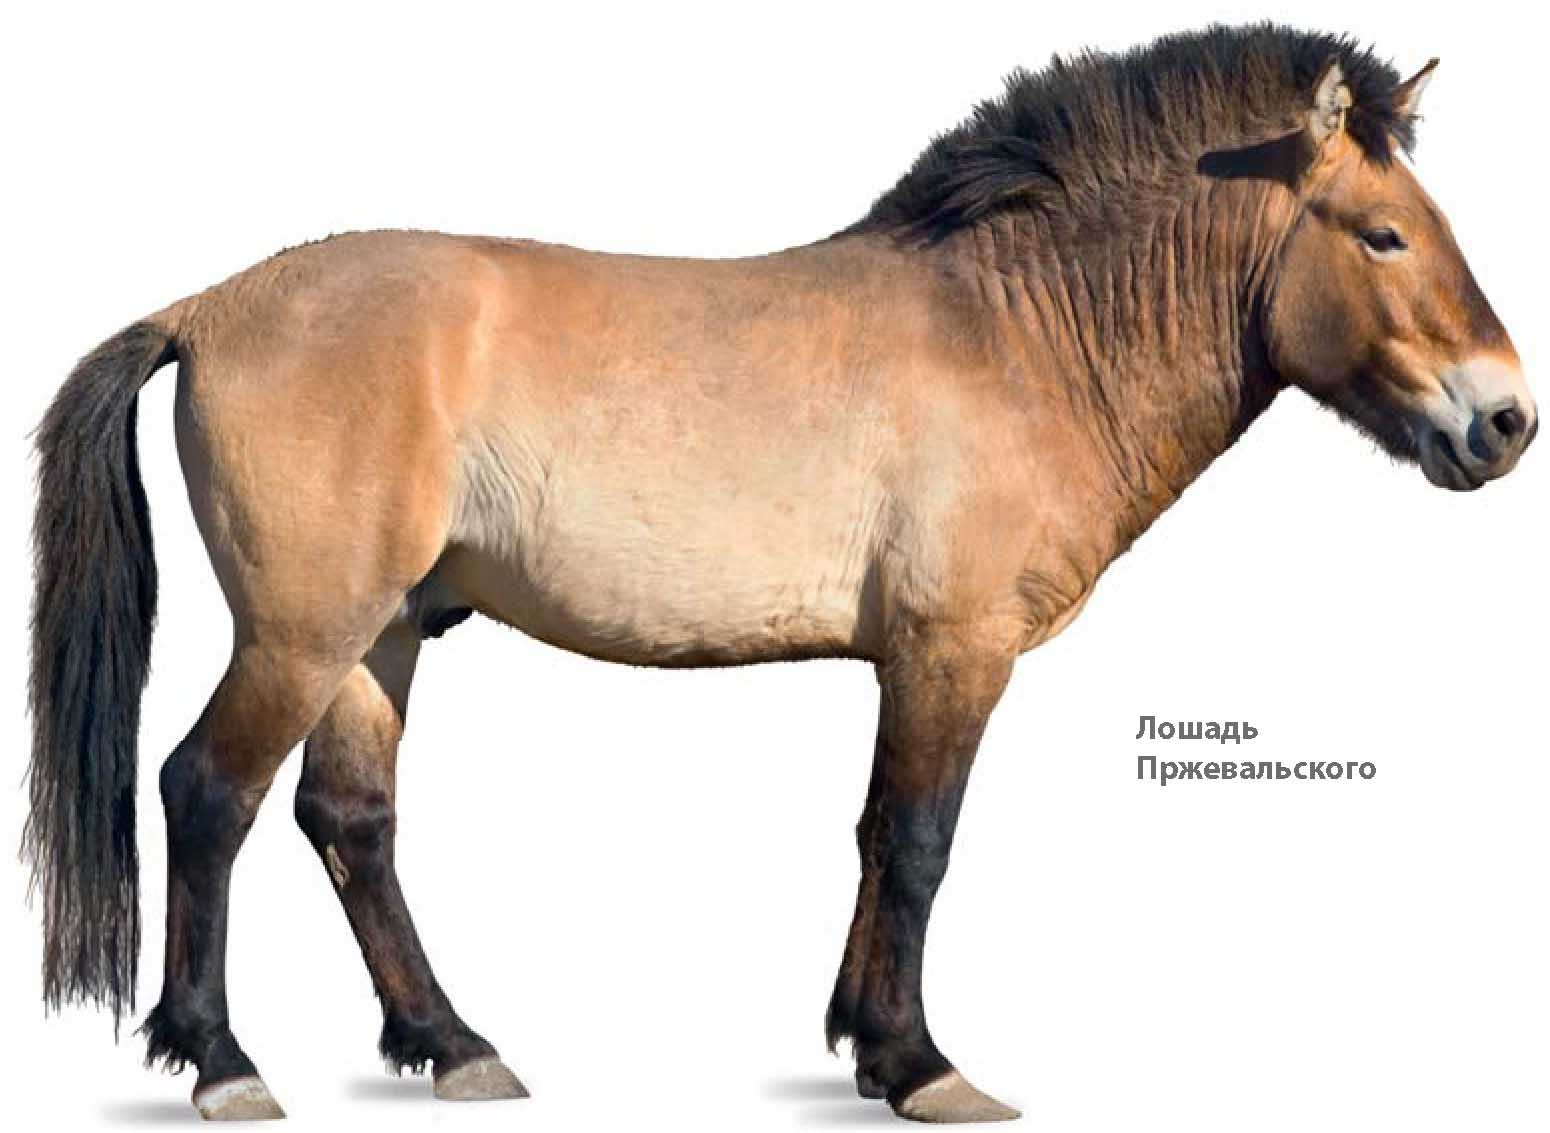 Лошадь Пржевальского.